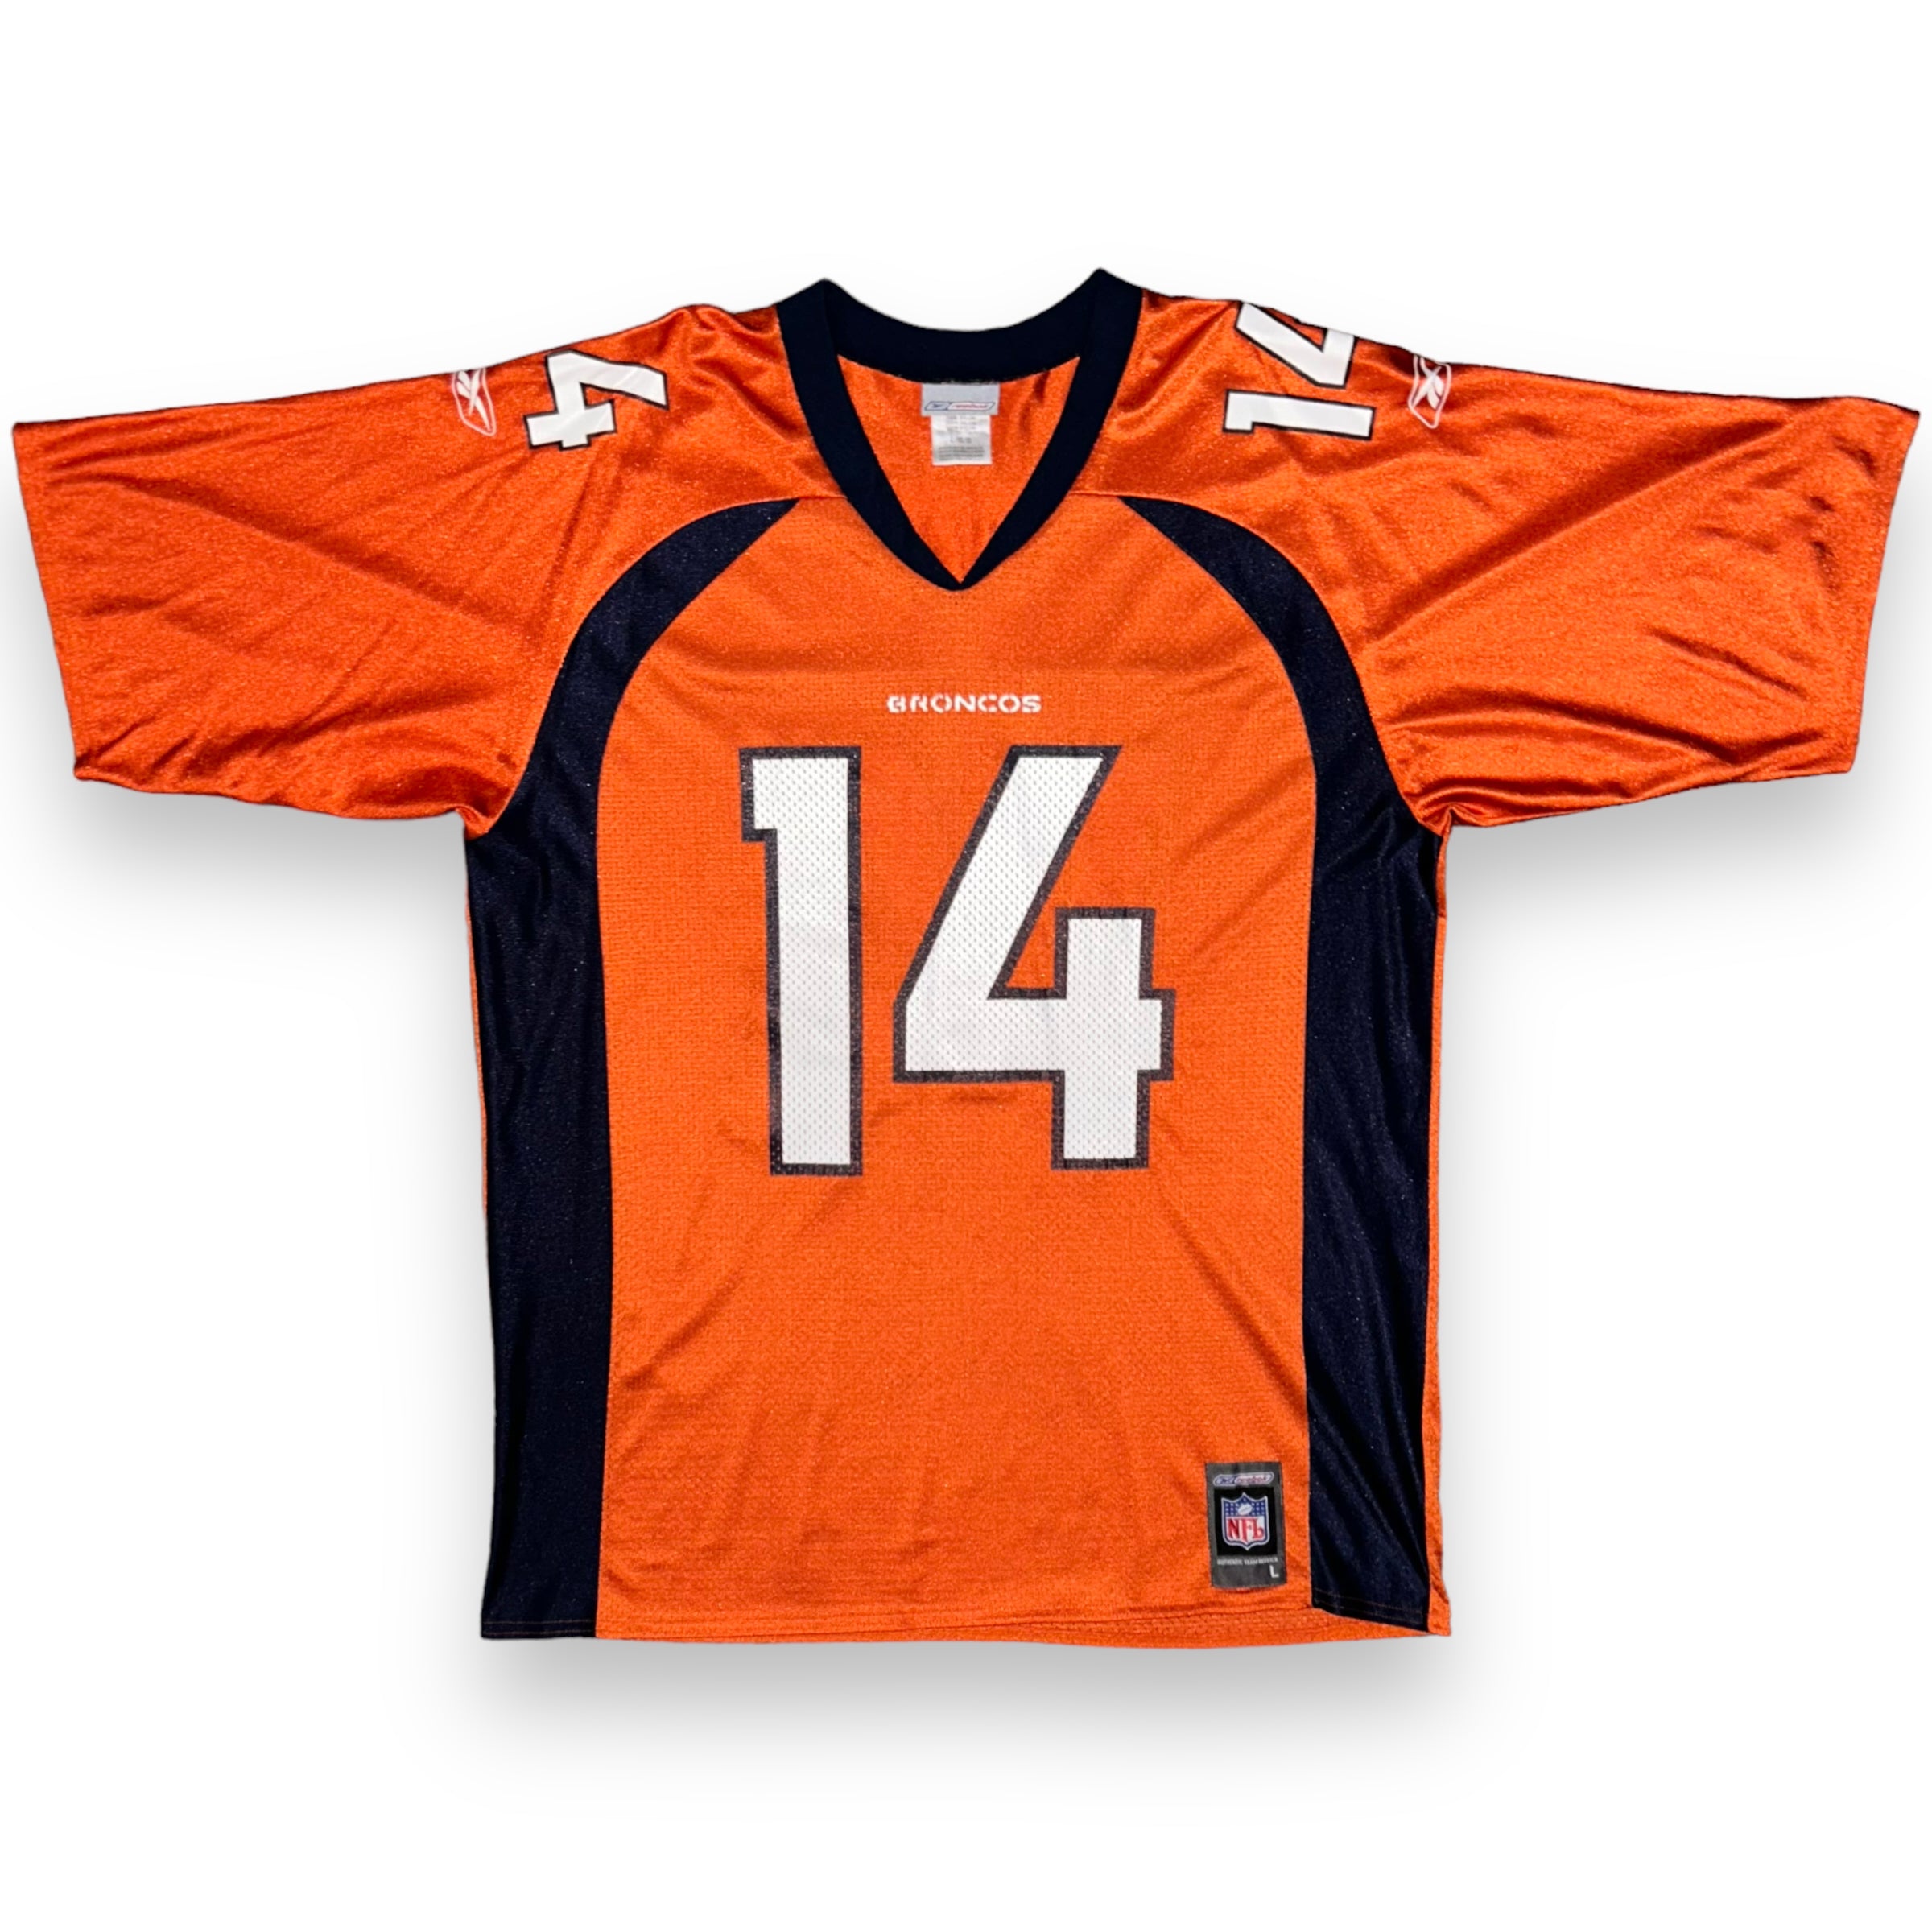 Denver Broncos NFL Vintage Jersey (XL)